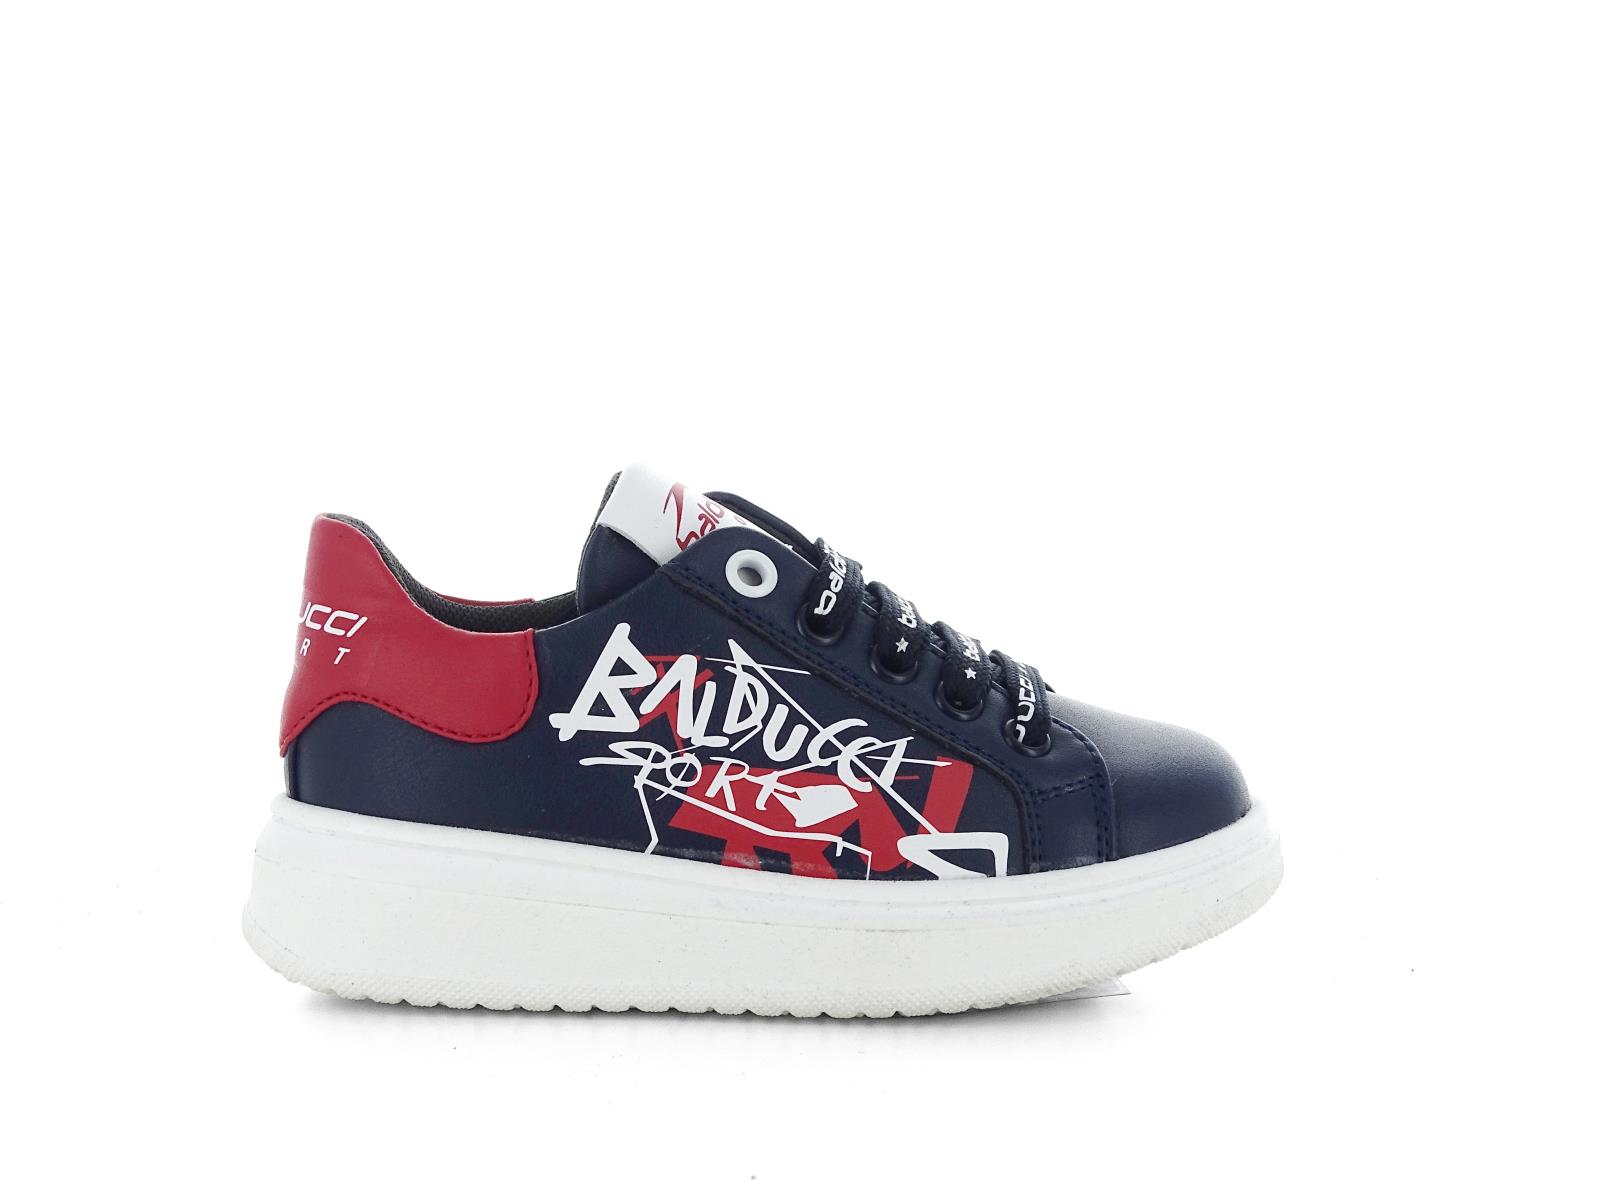 Sneakers: BALDUCCI BS3701 SNEAKERS BIMBO E RAGAZZO